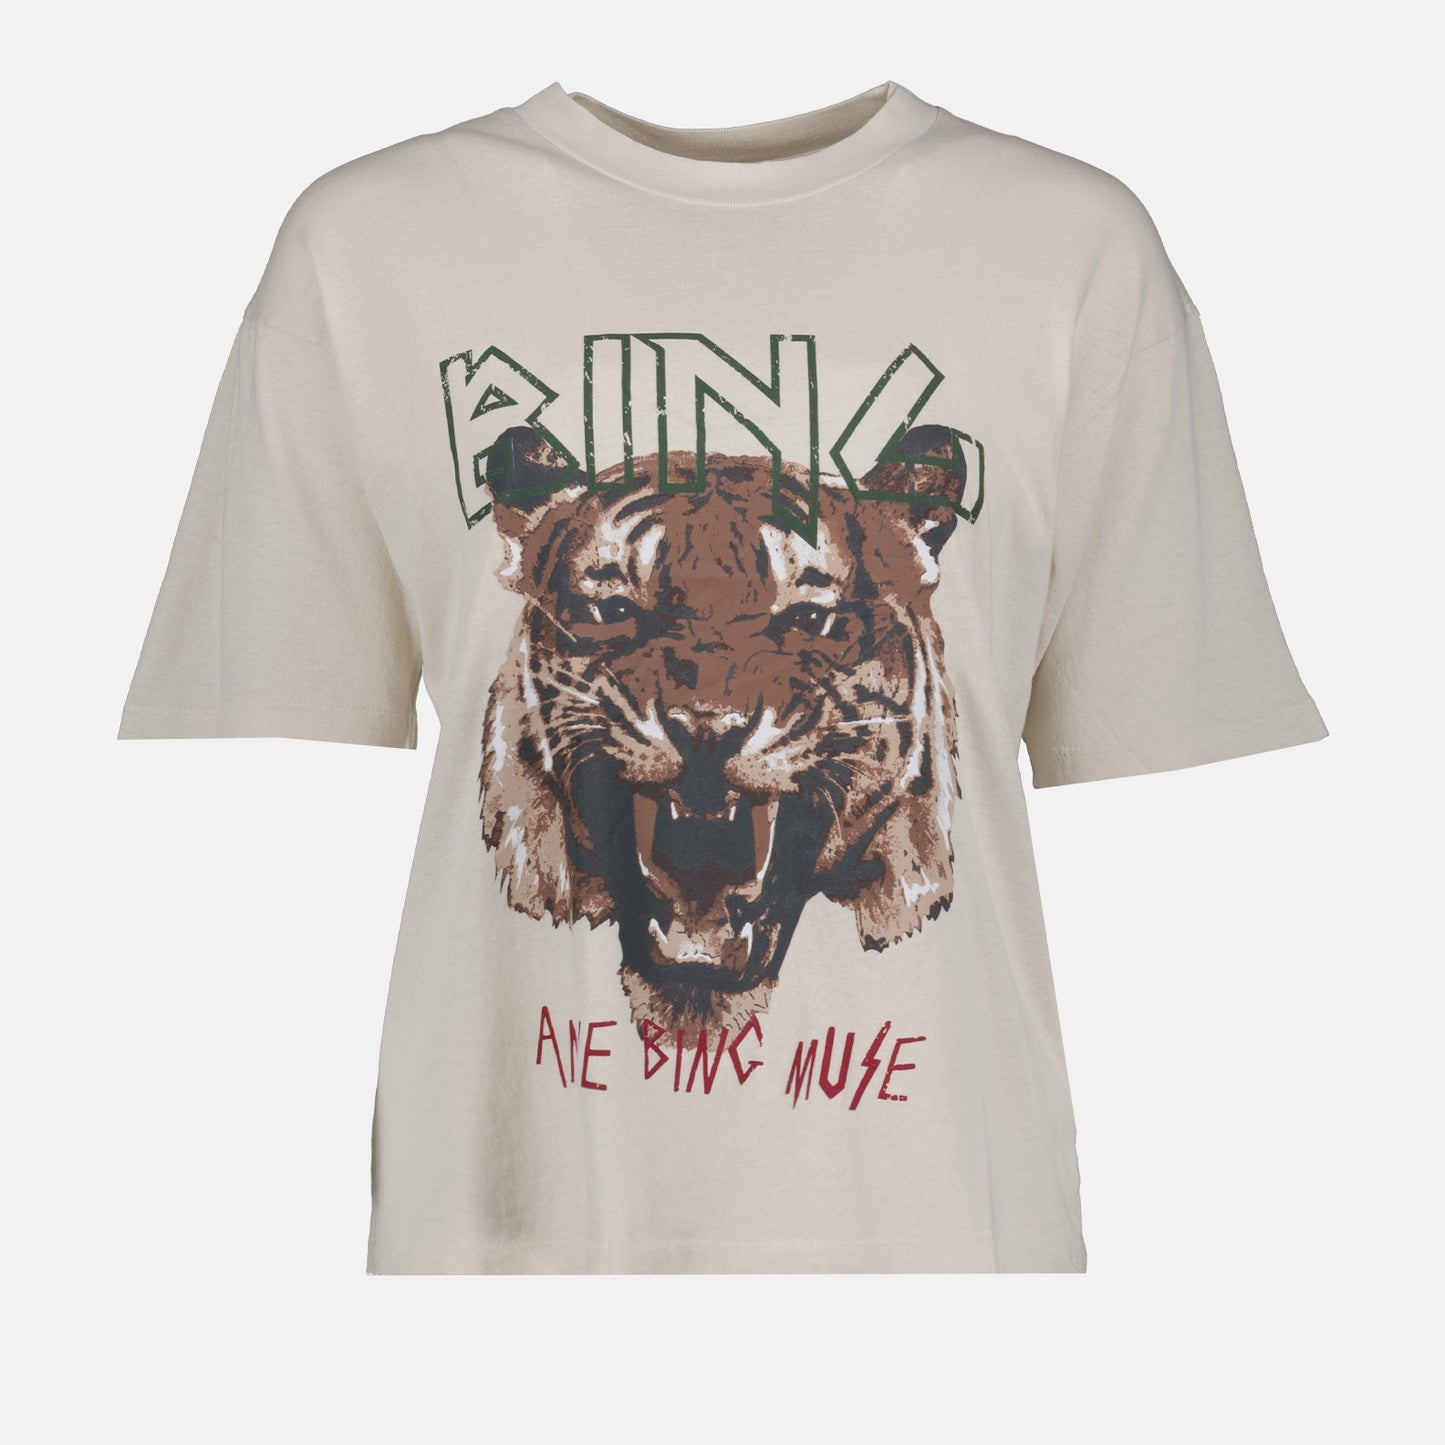 Tiger printed t-shirt